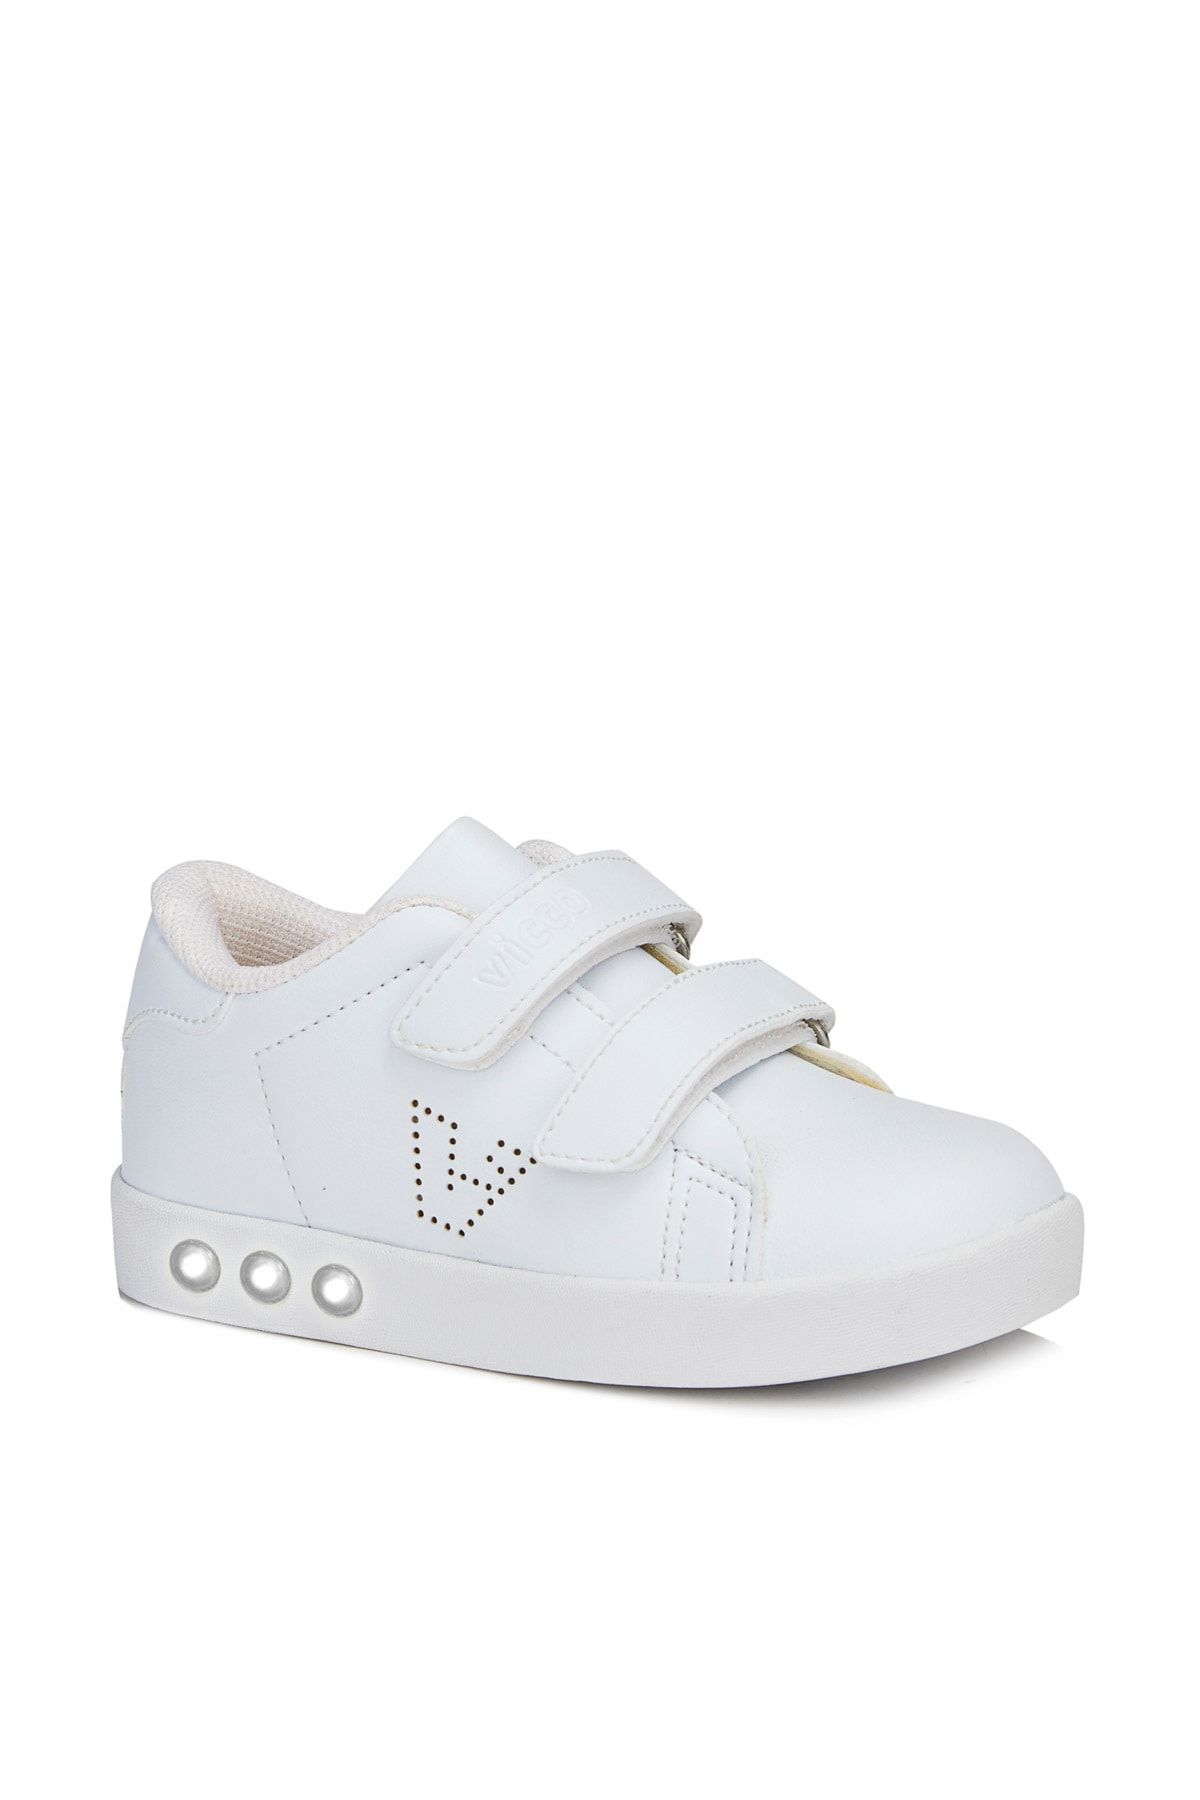 Vicco Oyo Unisex Bebe Beyaz Spor Ayakkabı